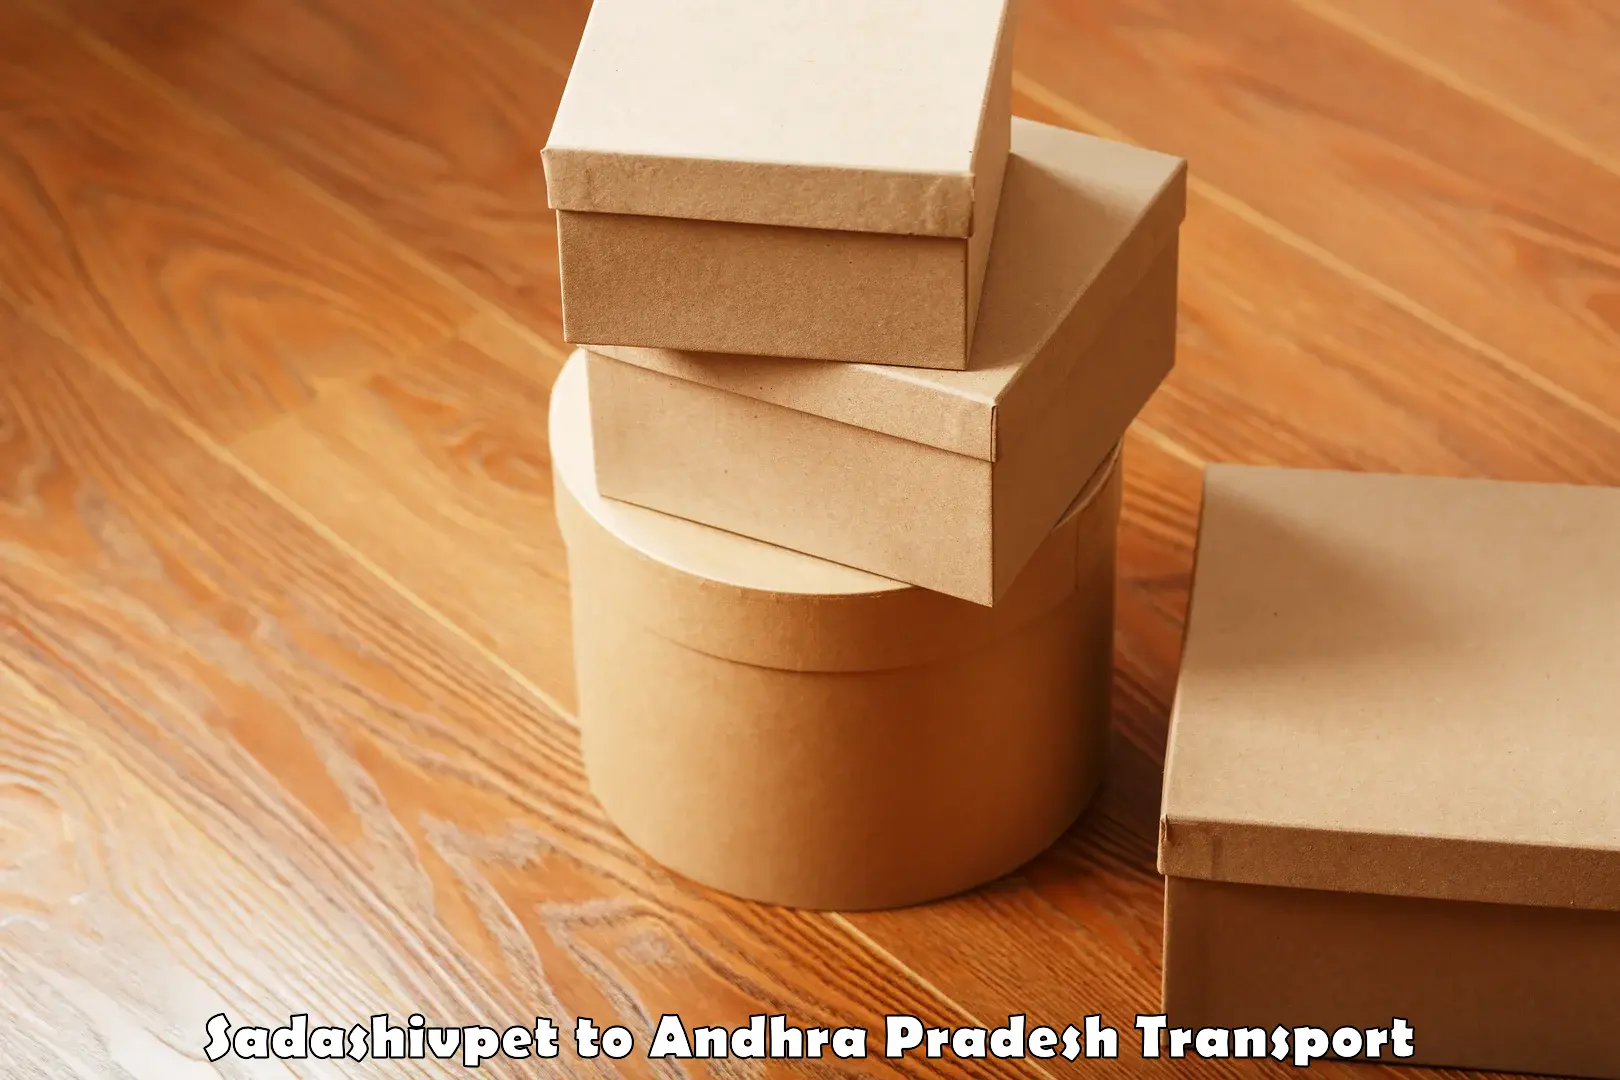 Air freight transport services Sadashivpet to Tirupati